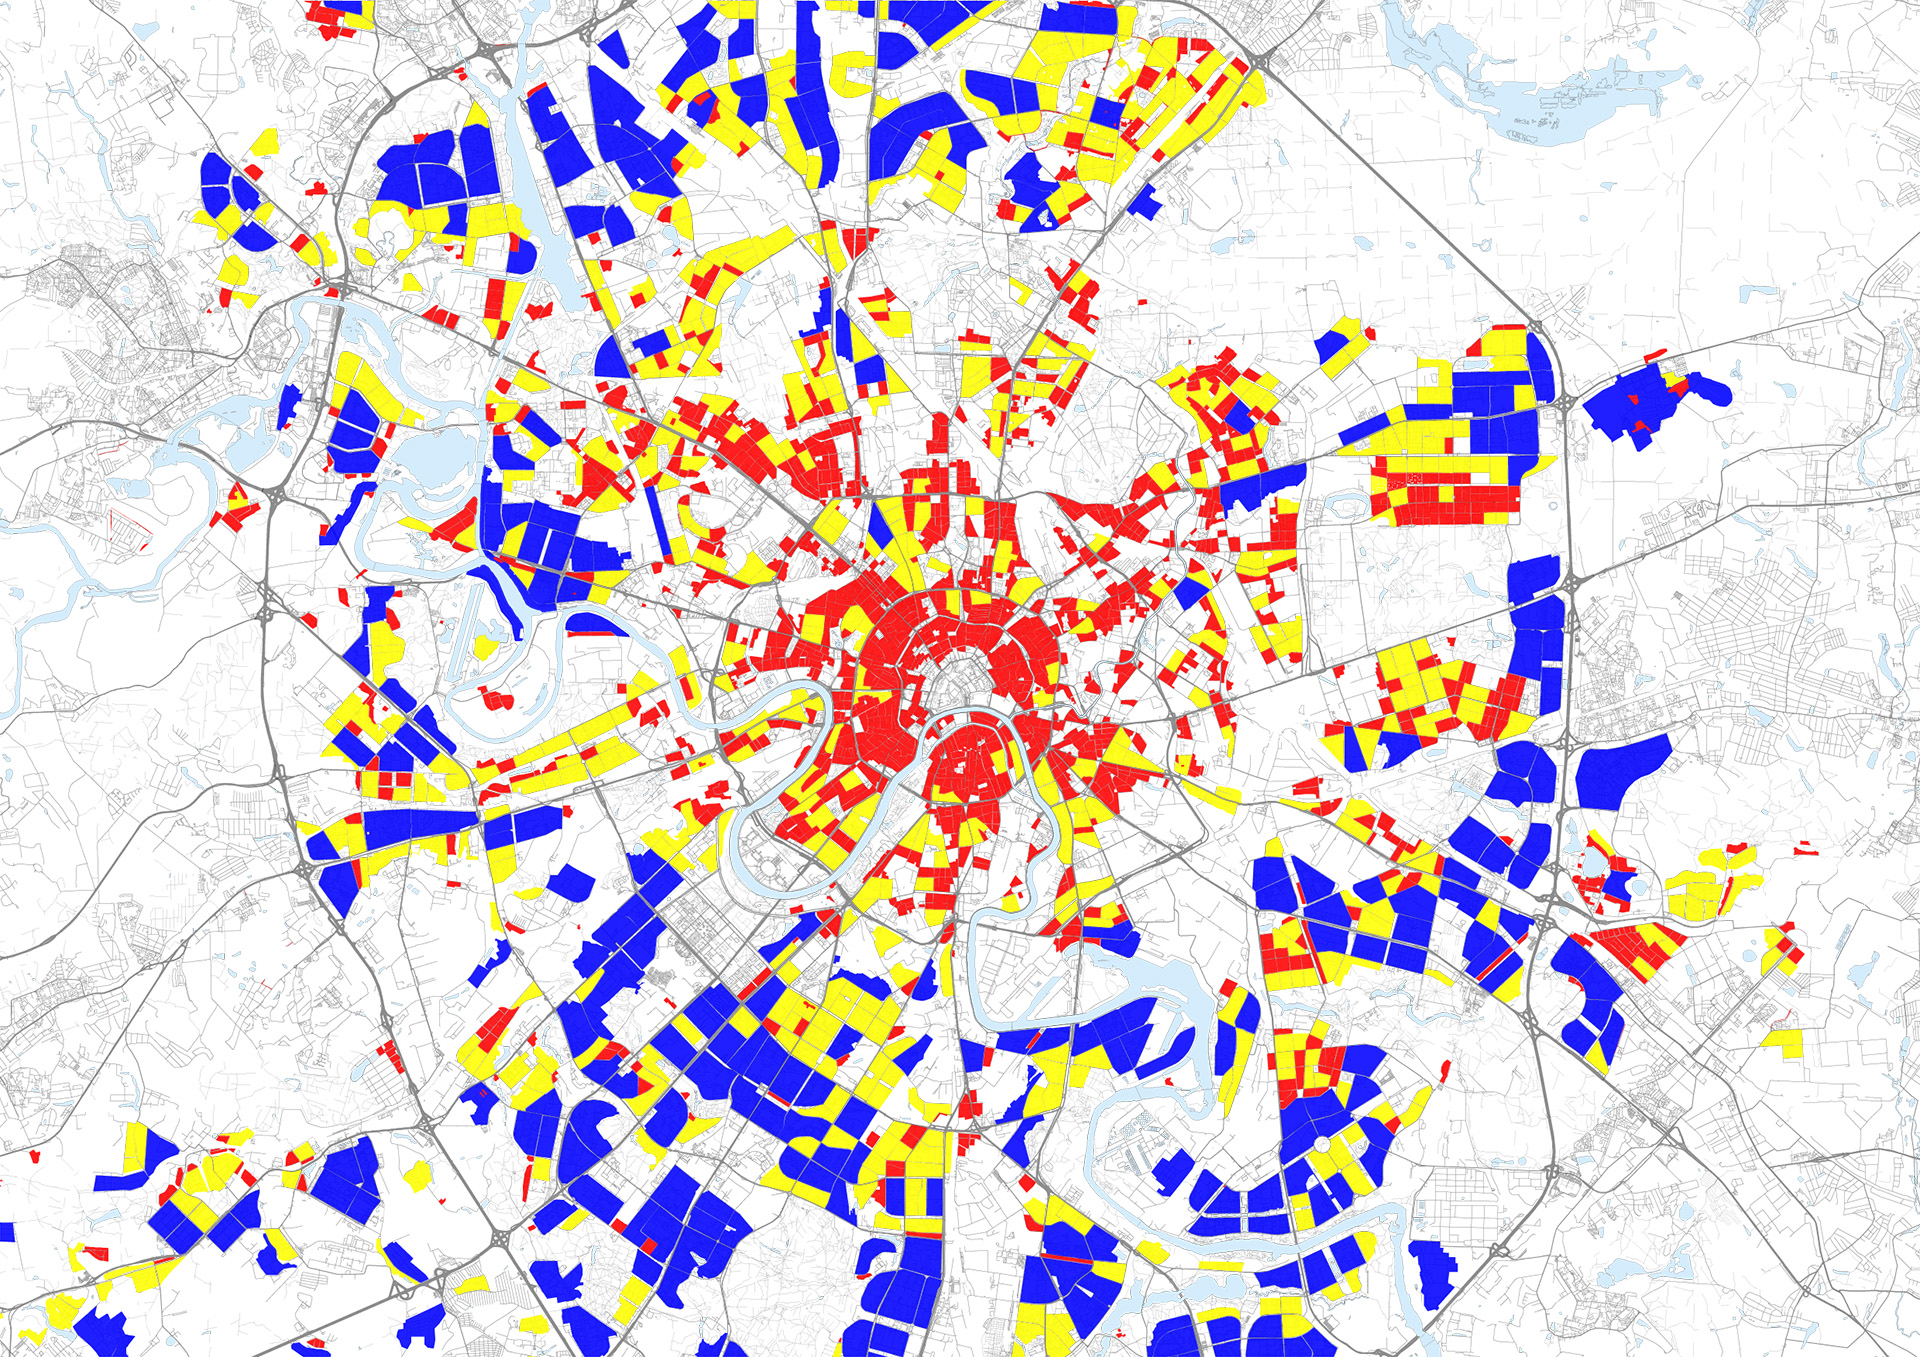 Analisi GIS per lo studio del Masterplan pedonale di Mosca - mappatura delle aree edificate per dimensione degli isolati